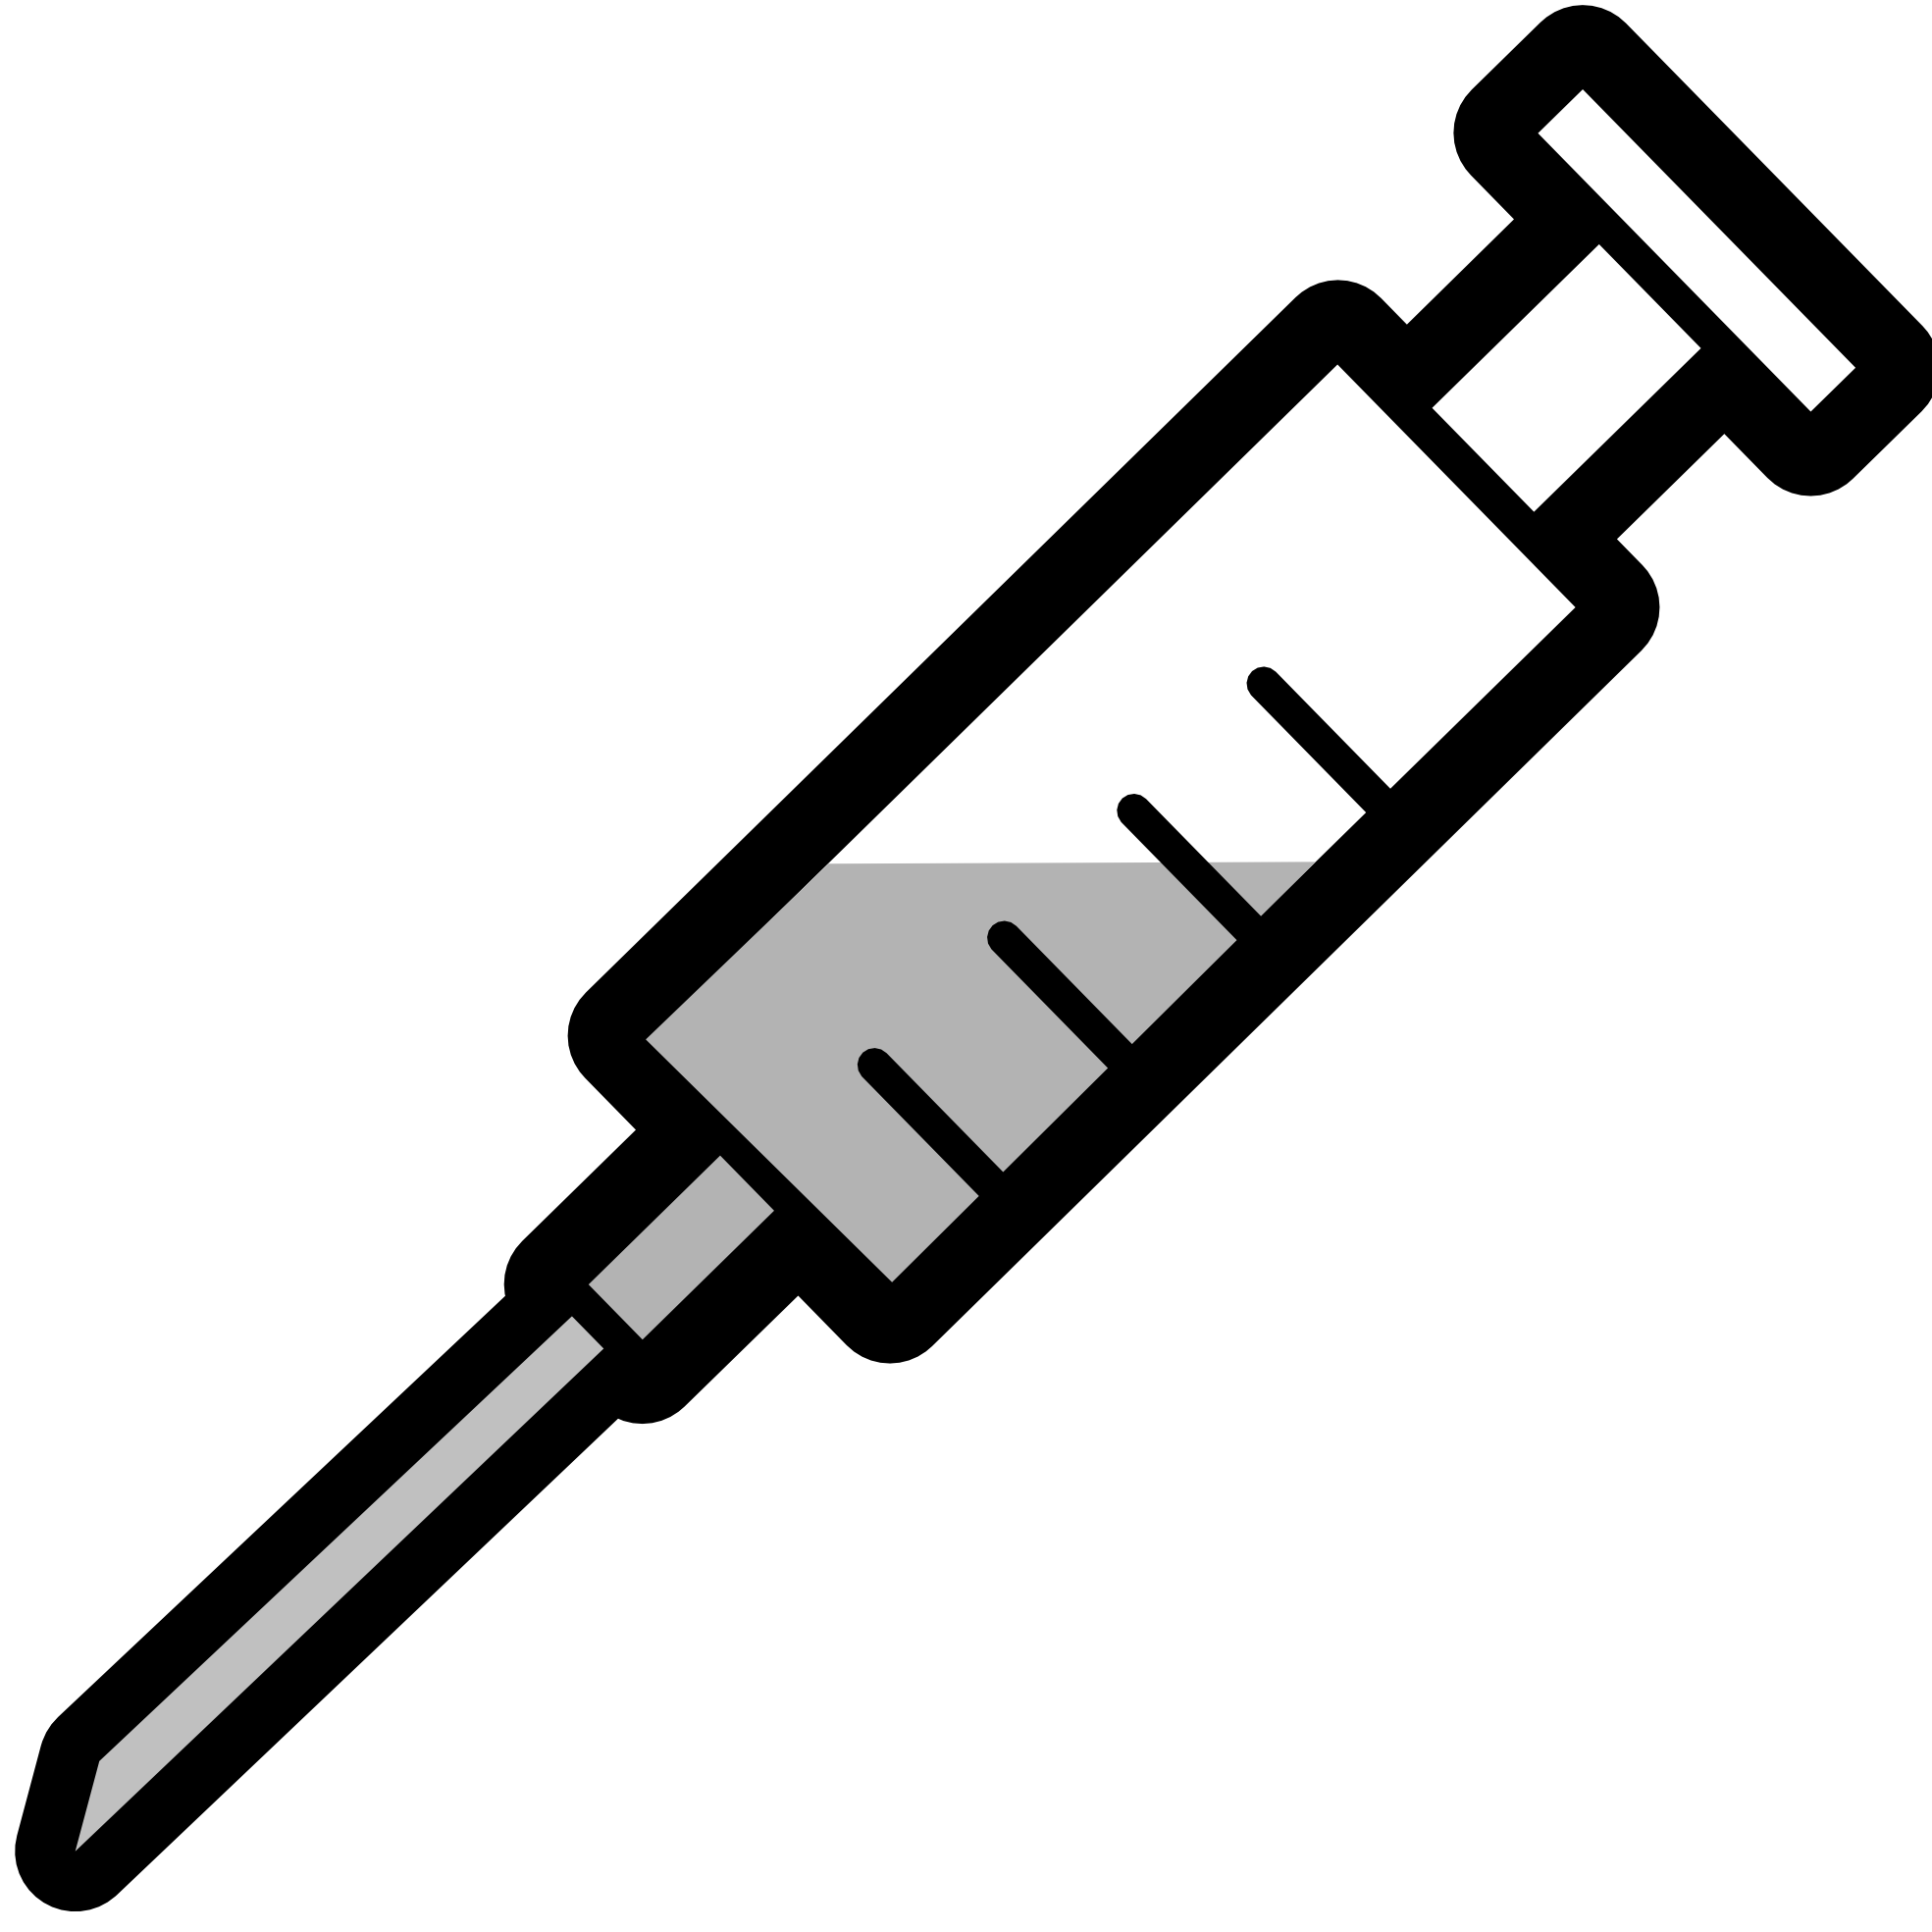 Needle clipart medical. Syringe black and white